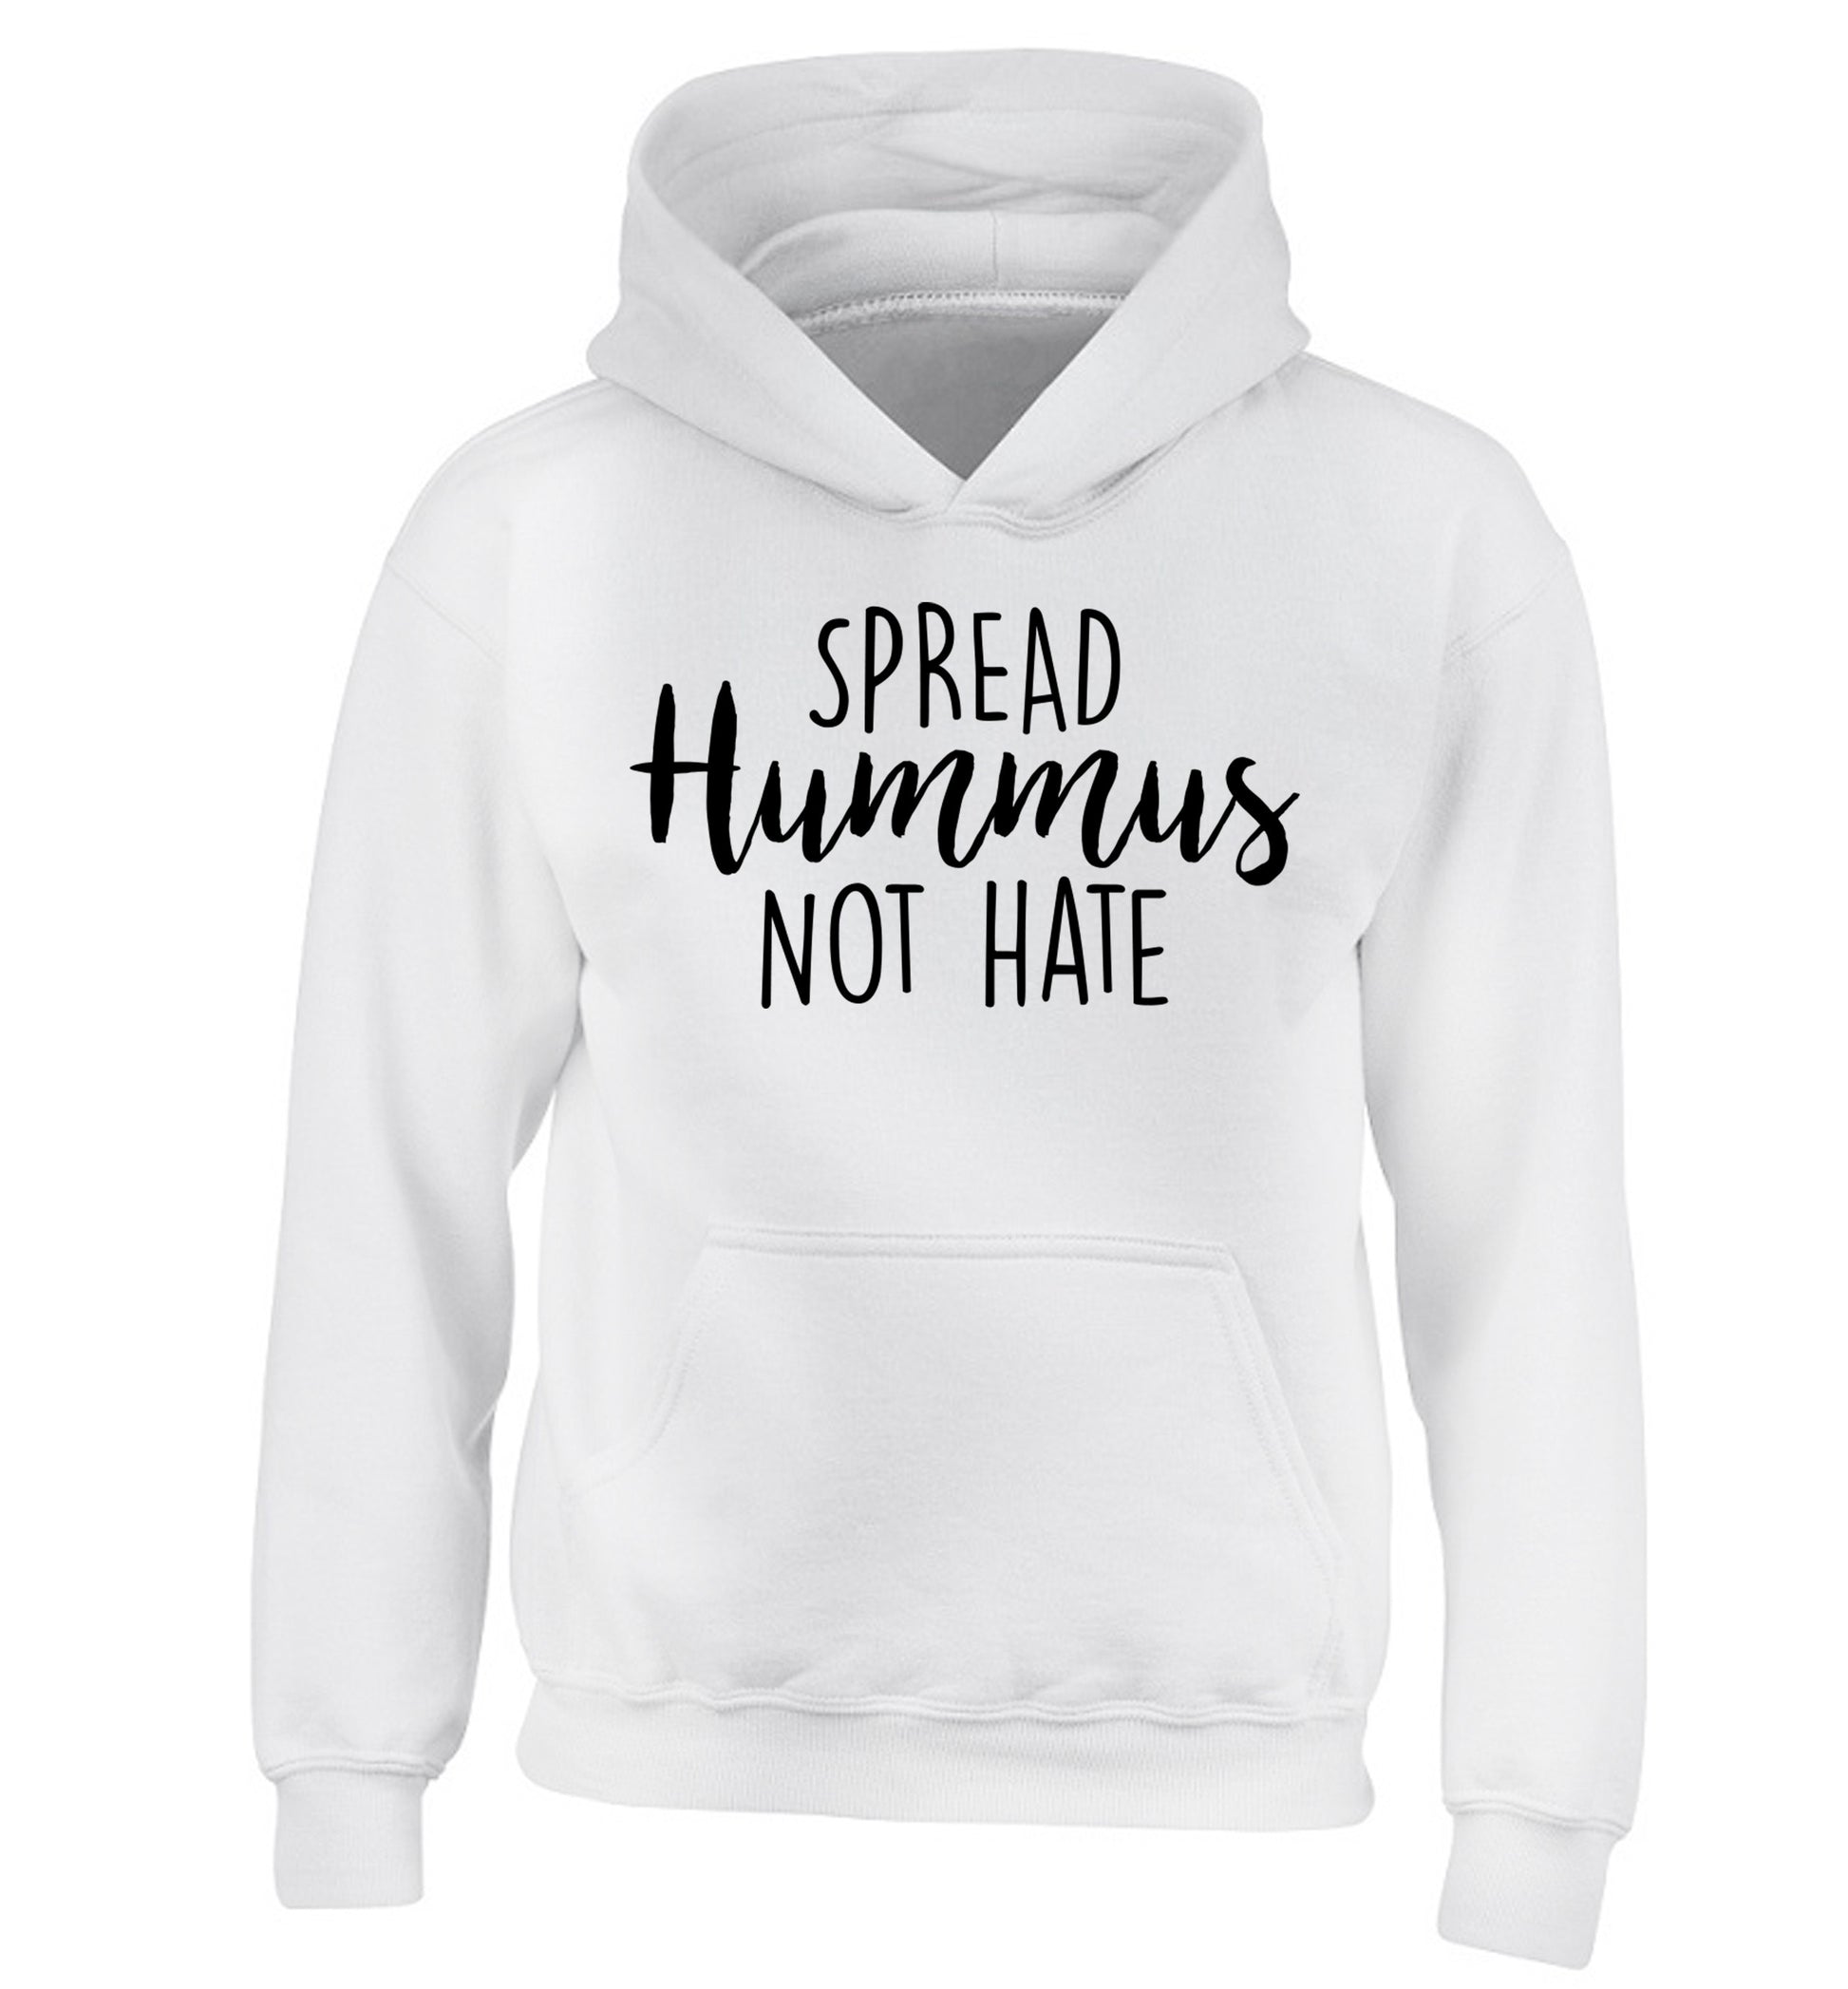 Spread hummus not hate script text children's white hoodie 12-14 Years